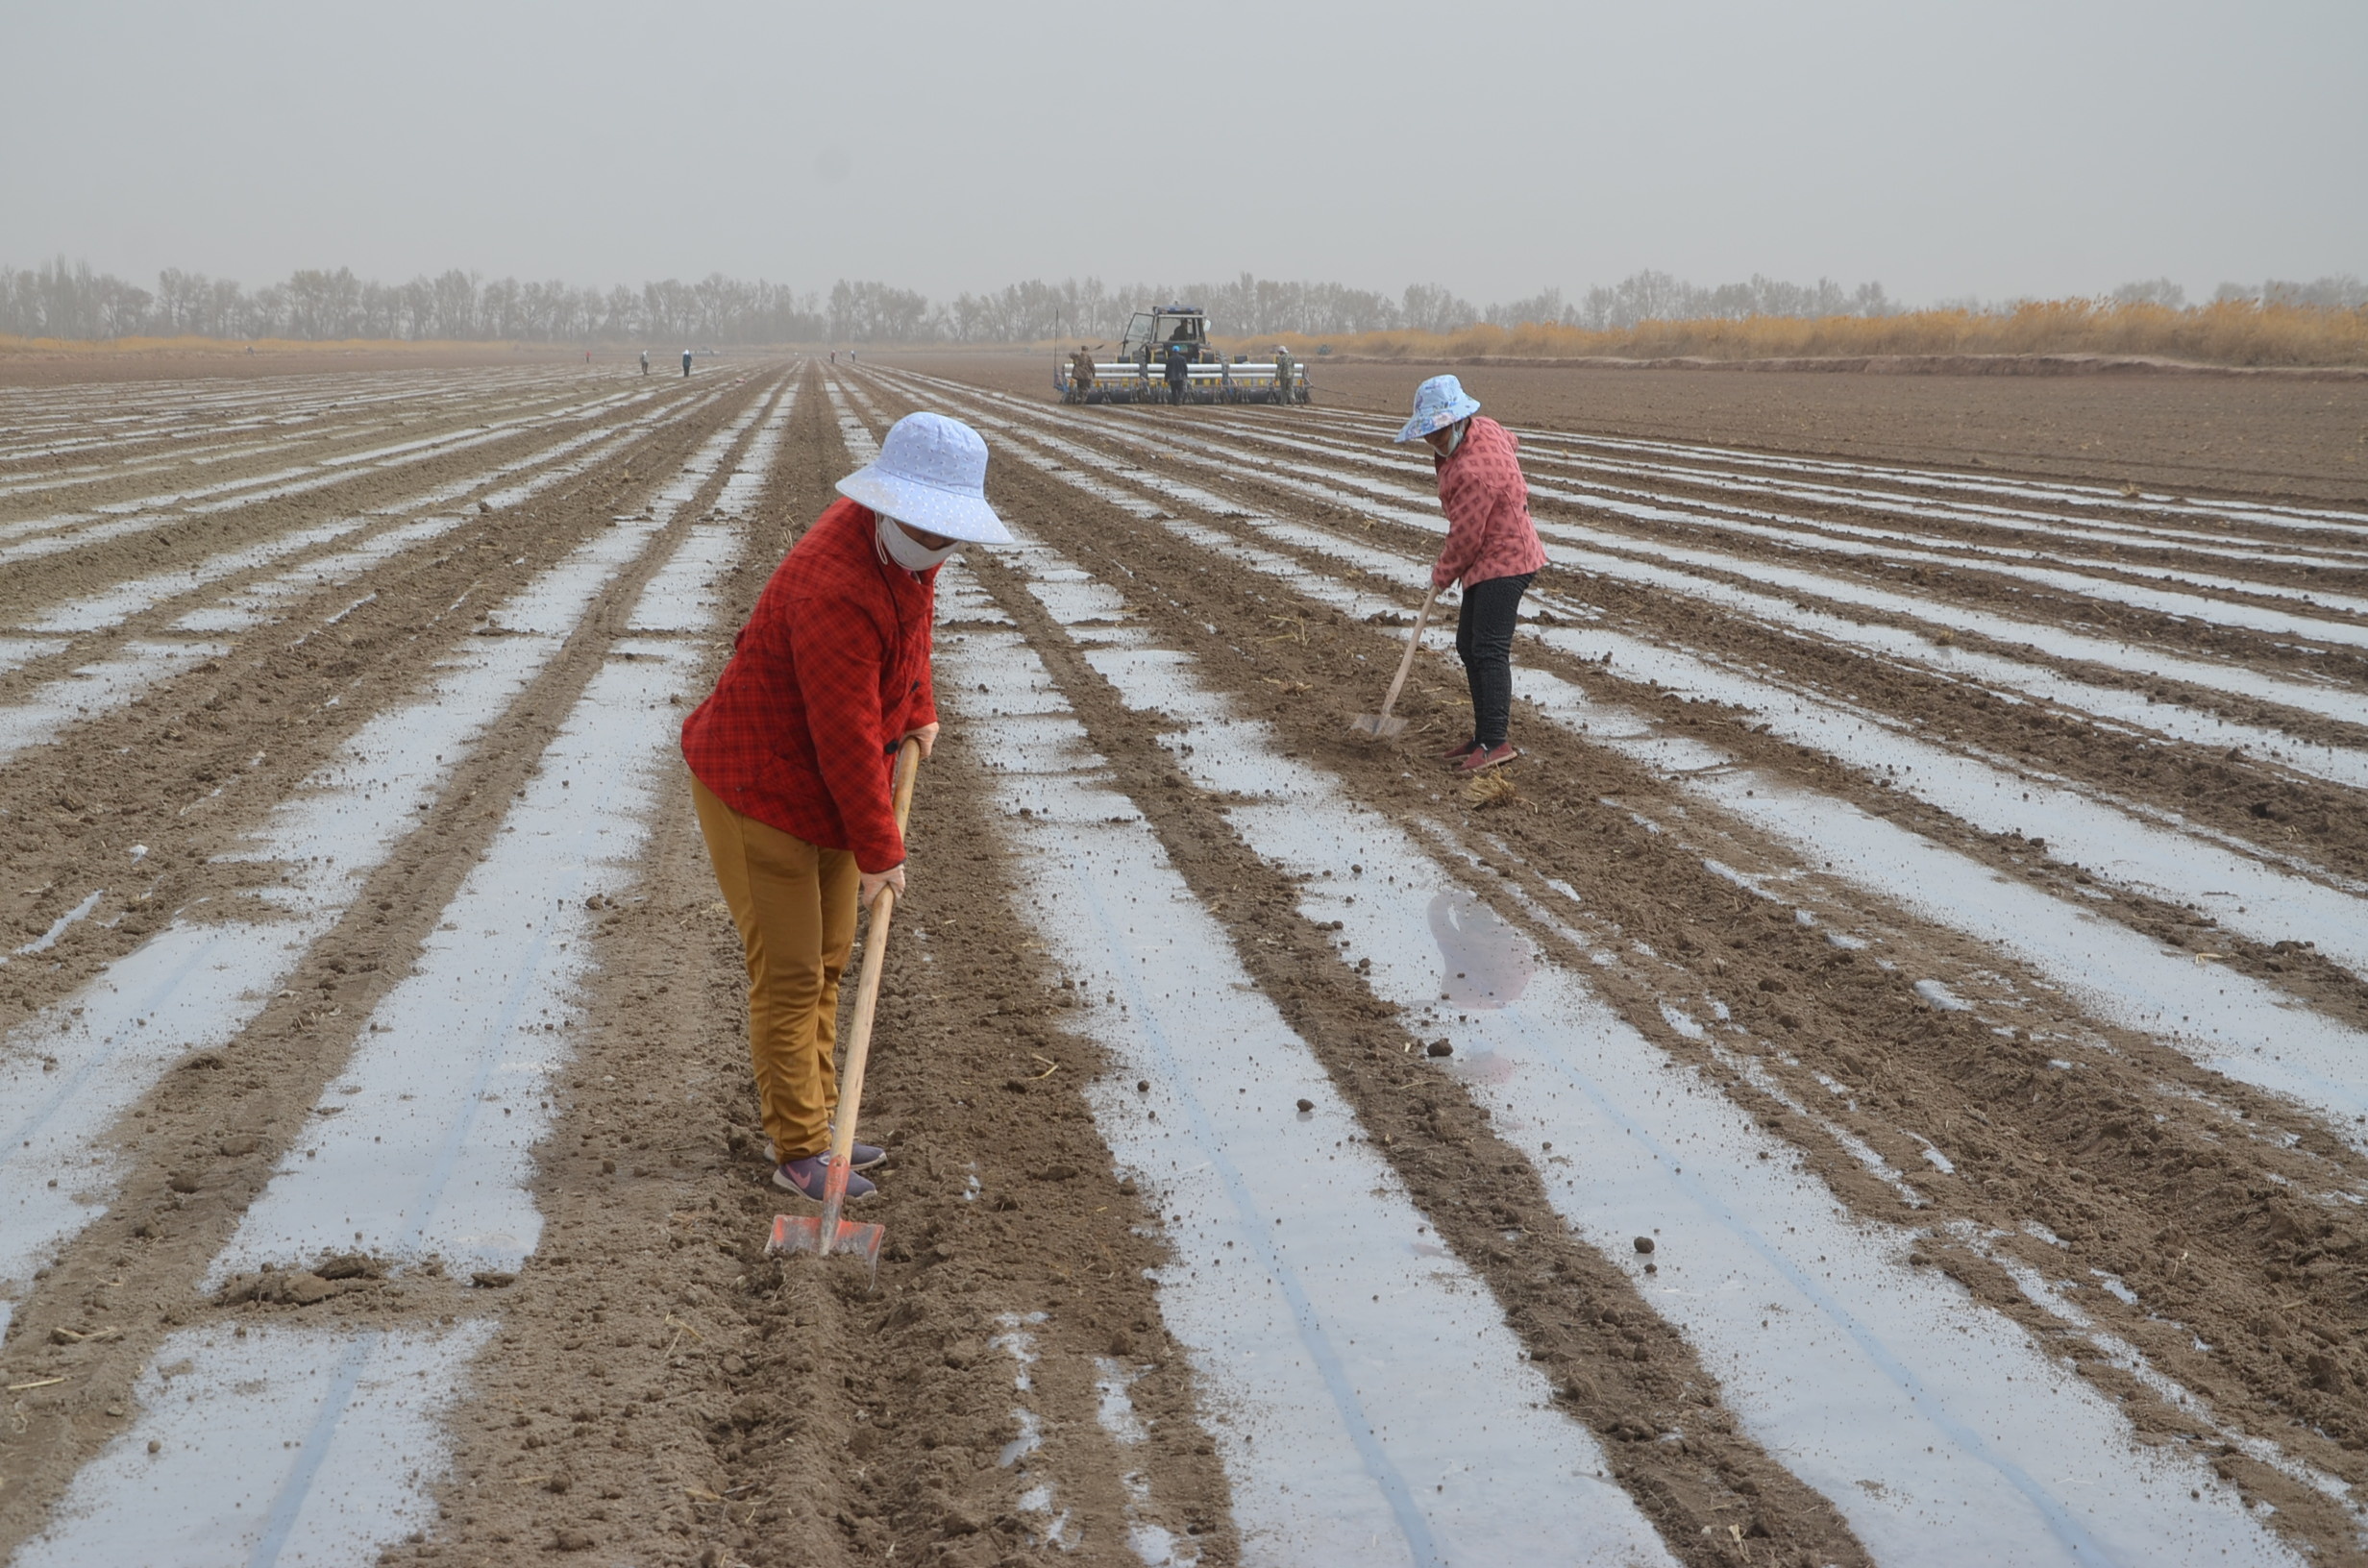 Una máquina sembradora de precisión siembra semillas cerca de los trabajadores que trabajan en un campo de algodón del Cuerpo de Producción y Construcción de Xinjiang. Las marcas occidentales denunciaron la explotación humana en aquella región china (Reuters)